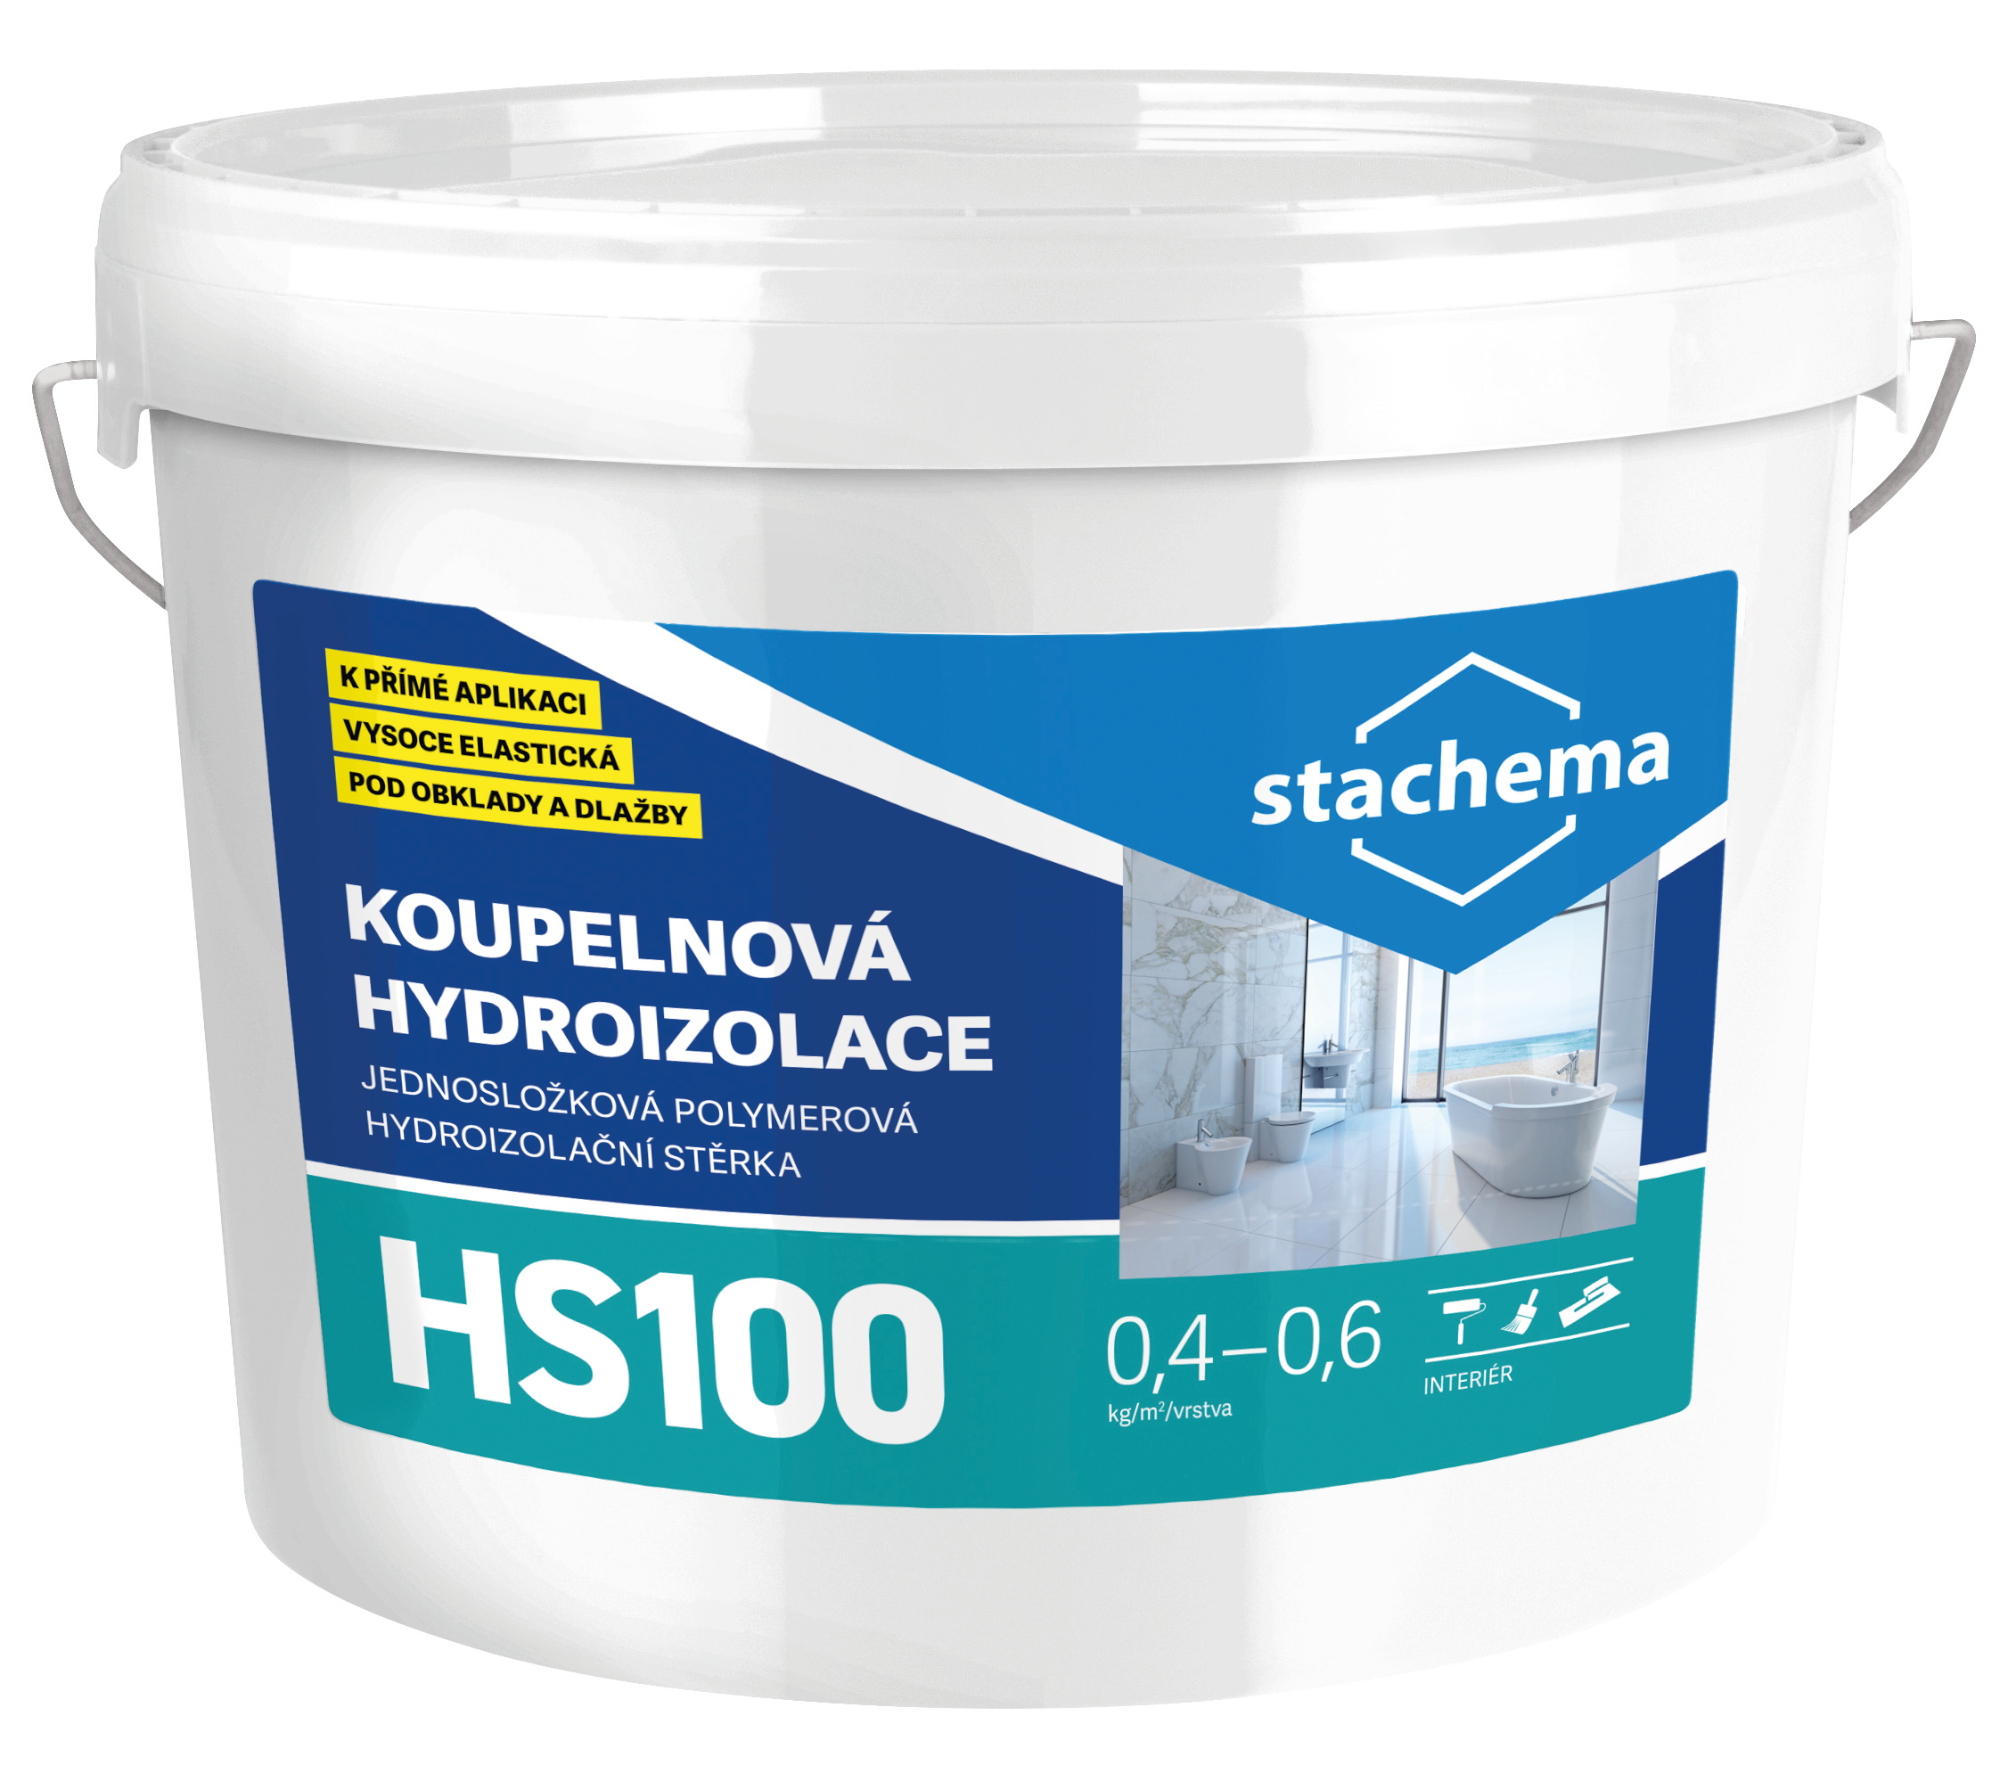 Hydroizolace koupelnová Stachema HS100 5 kg